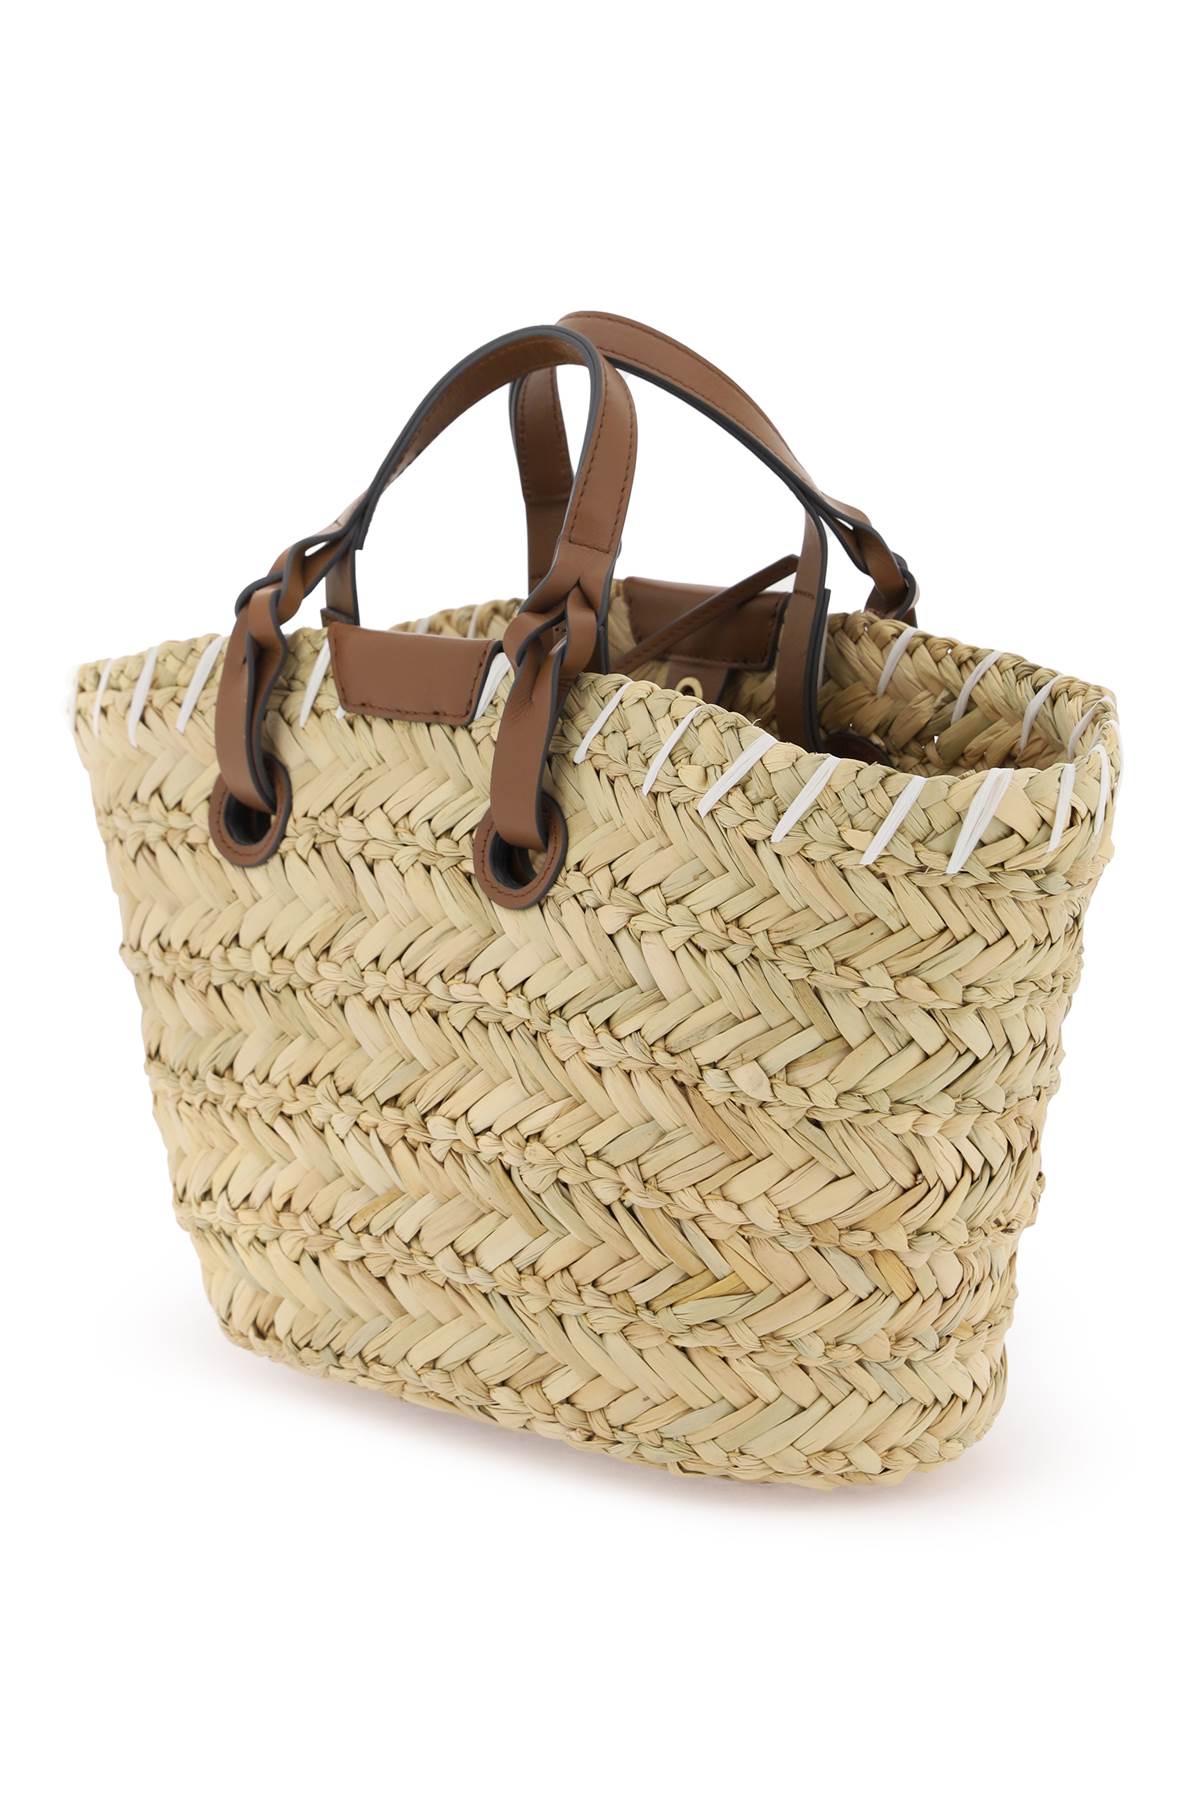 Anya hindmarch paper eyes basket handbag-1